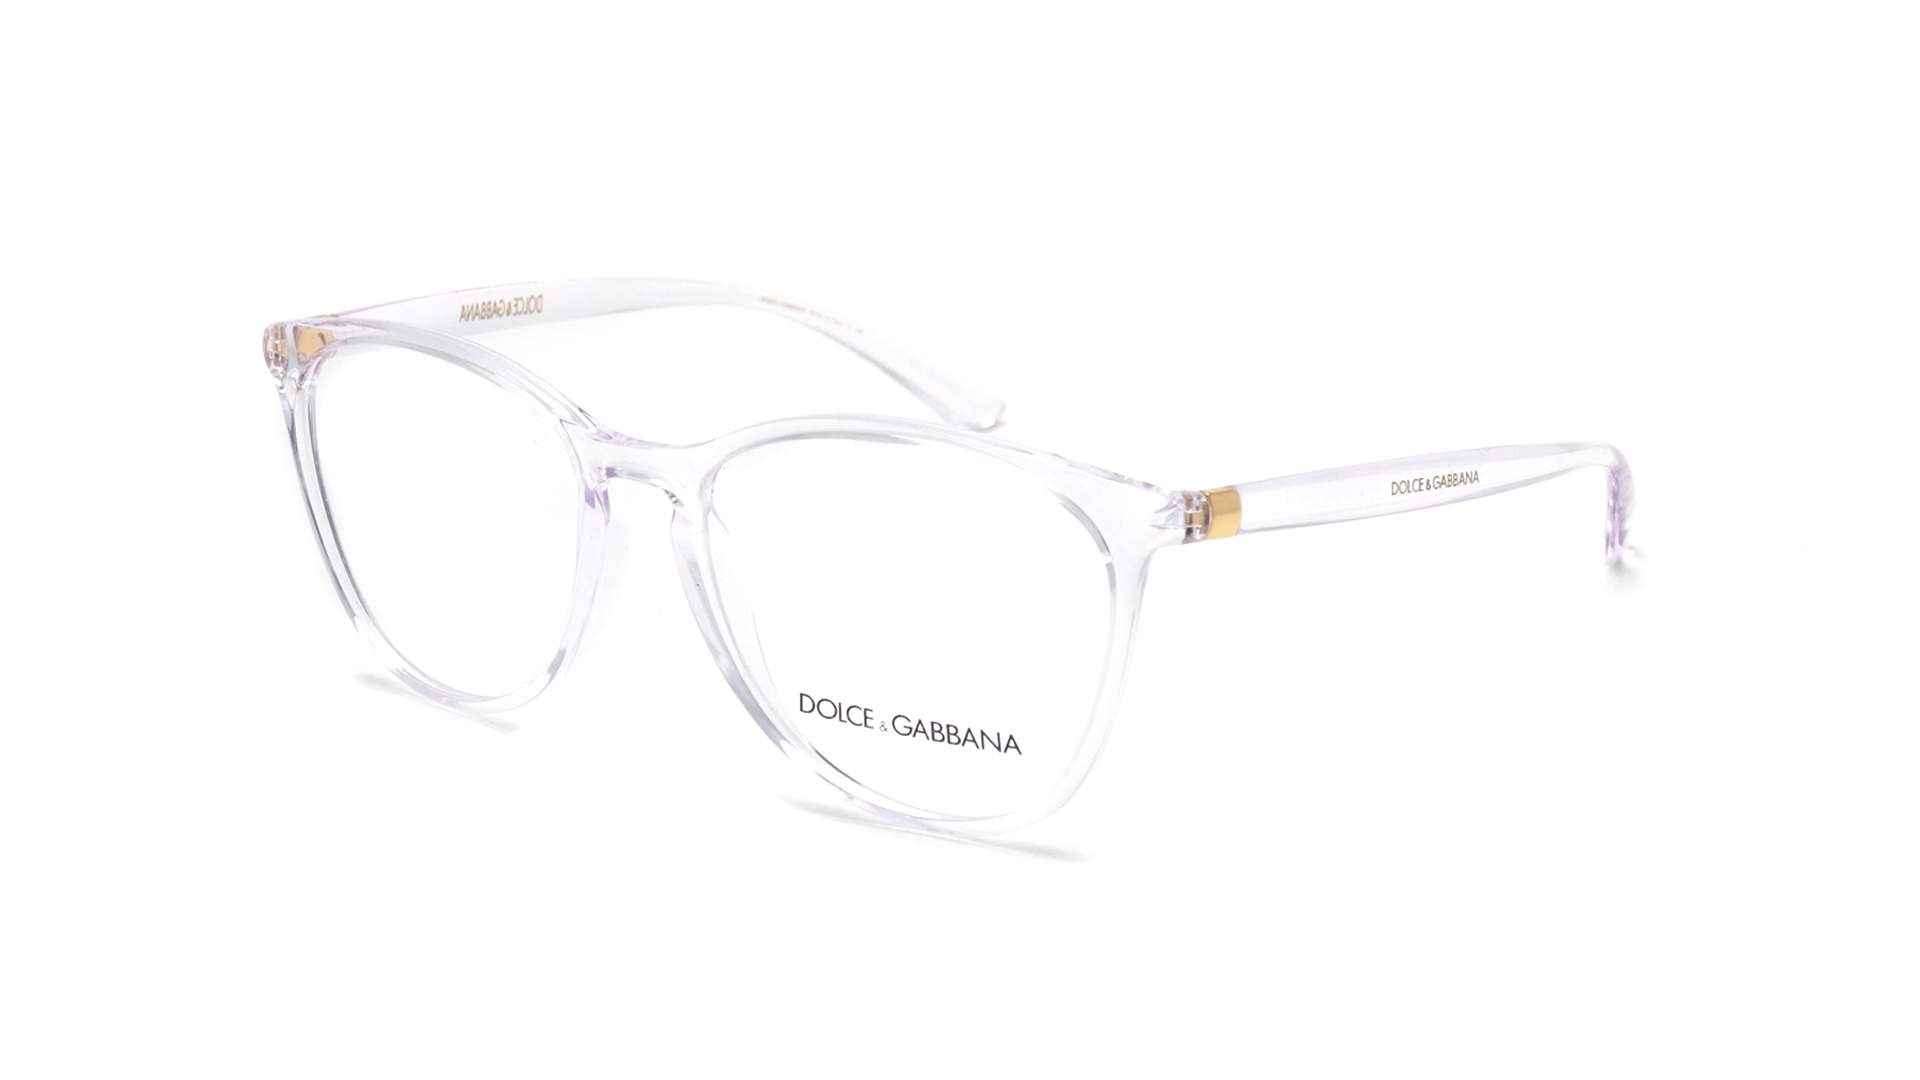 dolce & gabbana eyeglasses